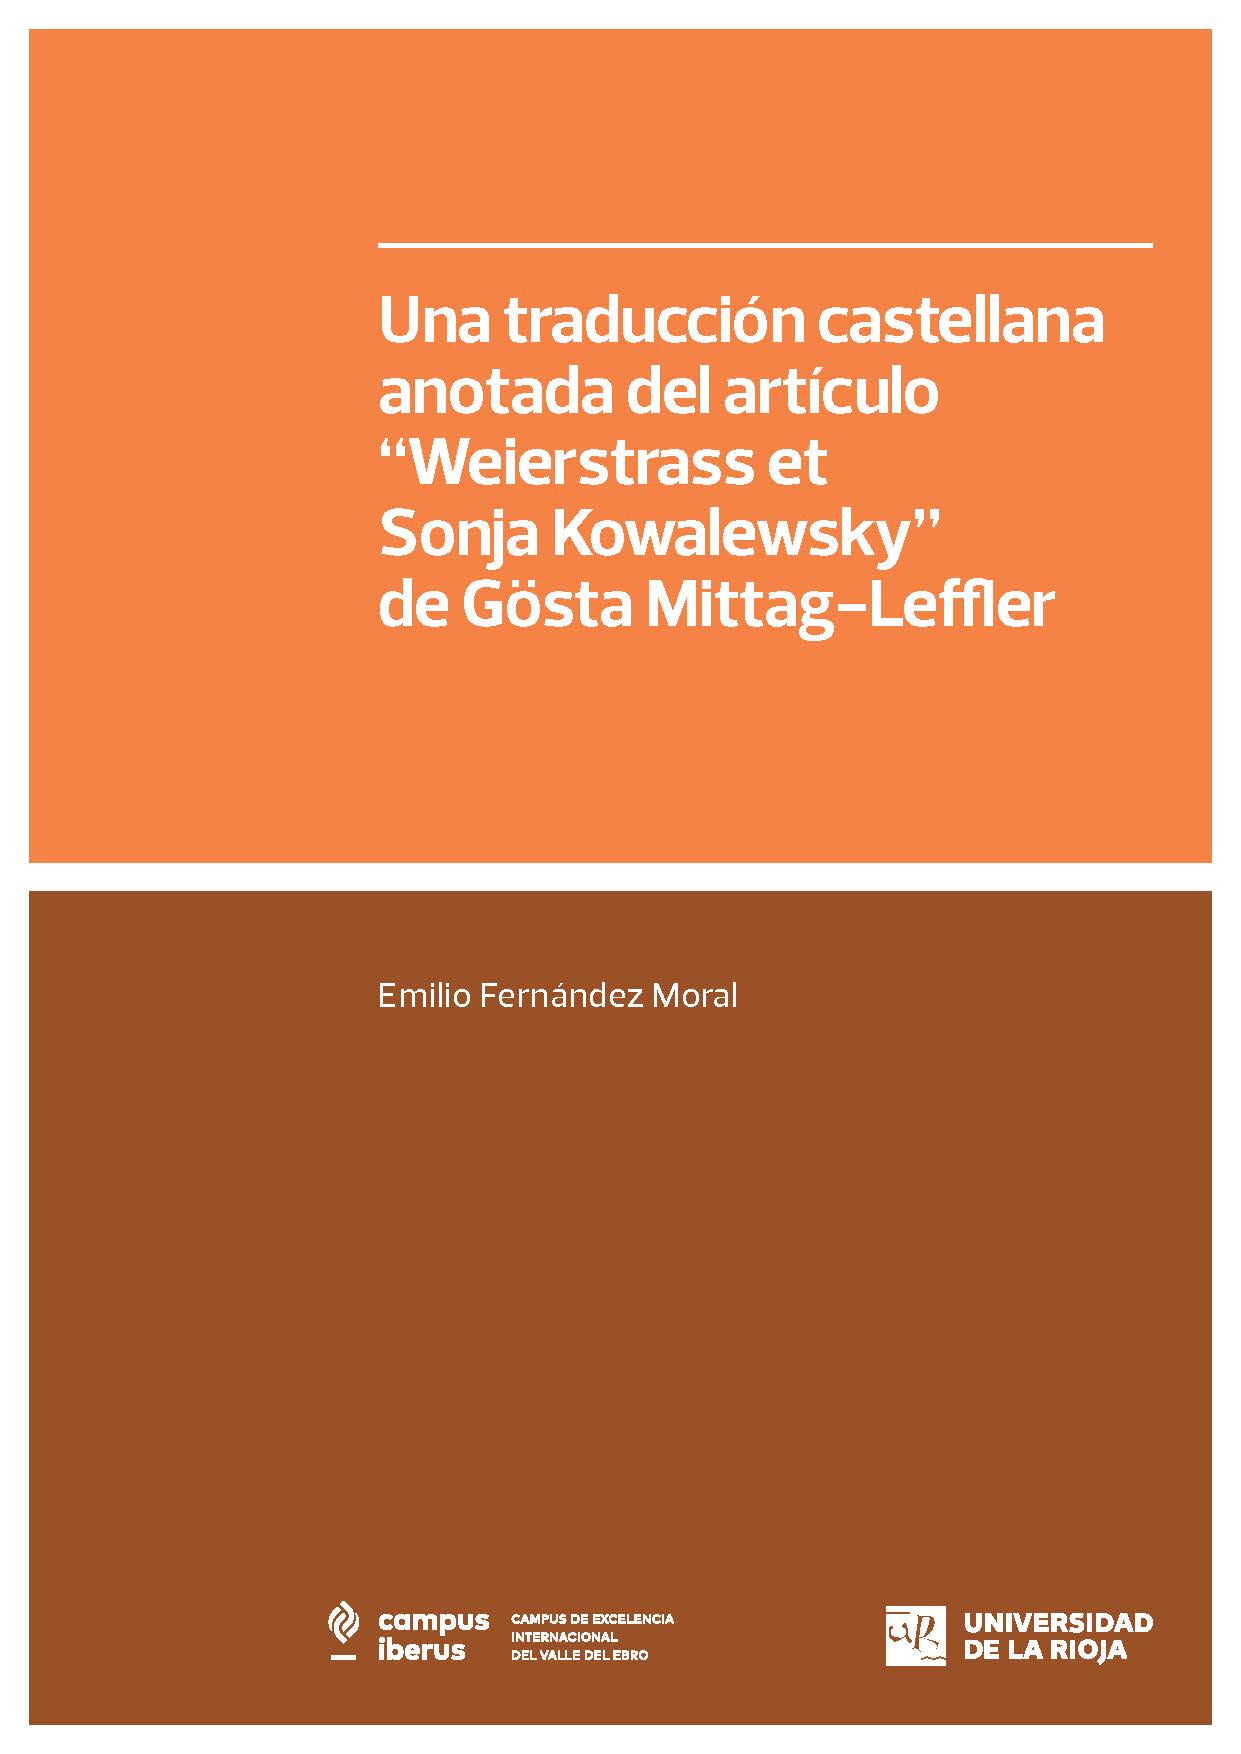 Imagen de portada del libro Una traducción castellana anotada del artículo “Weierstrass et Sonja Kowalewsky" de Gösta Mittag-Leffler (Acta Mathematica 39 (1923), 133–198)